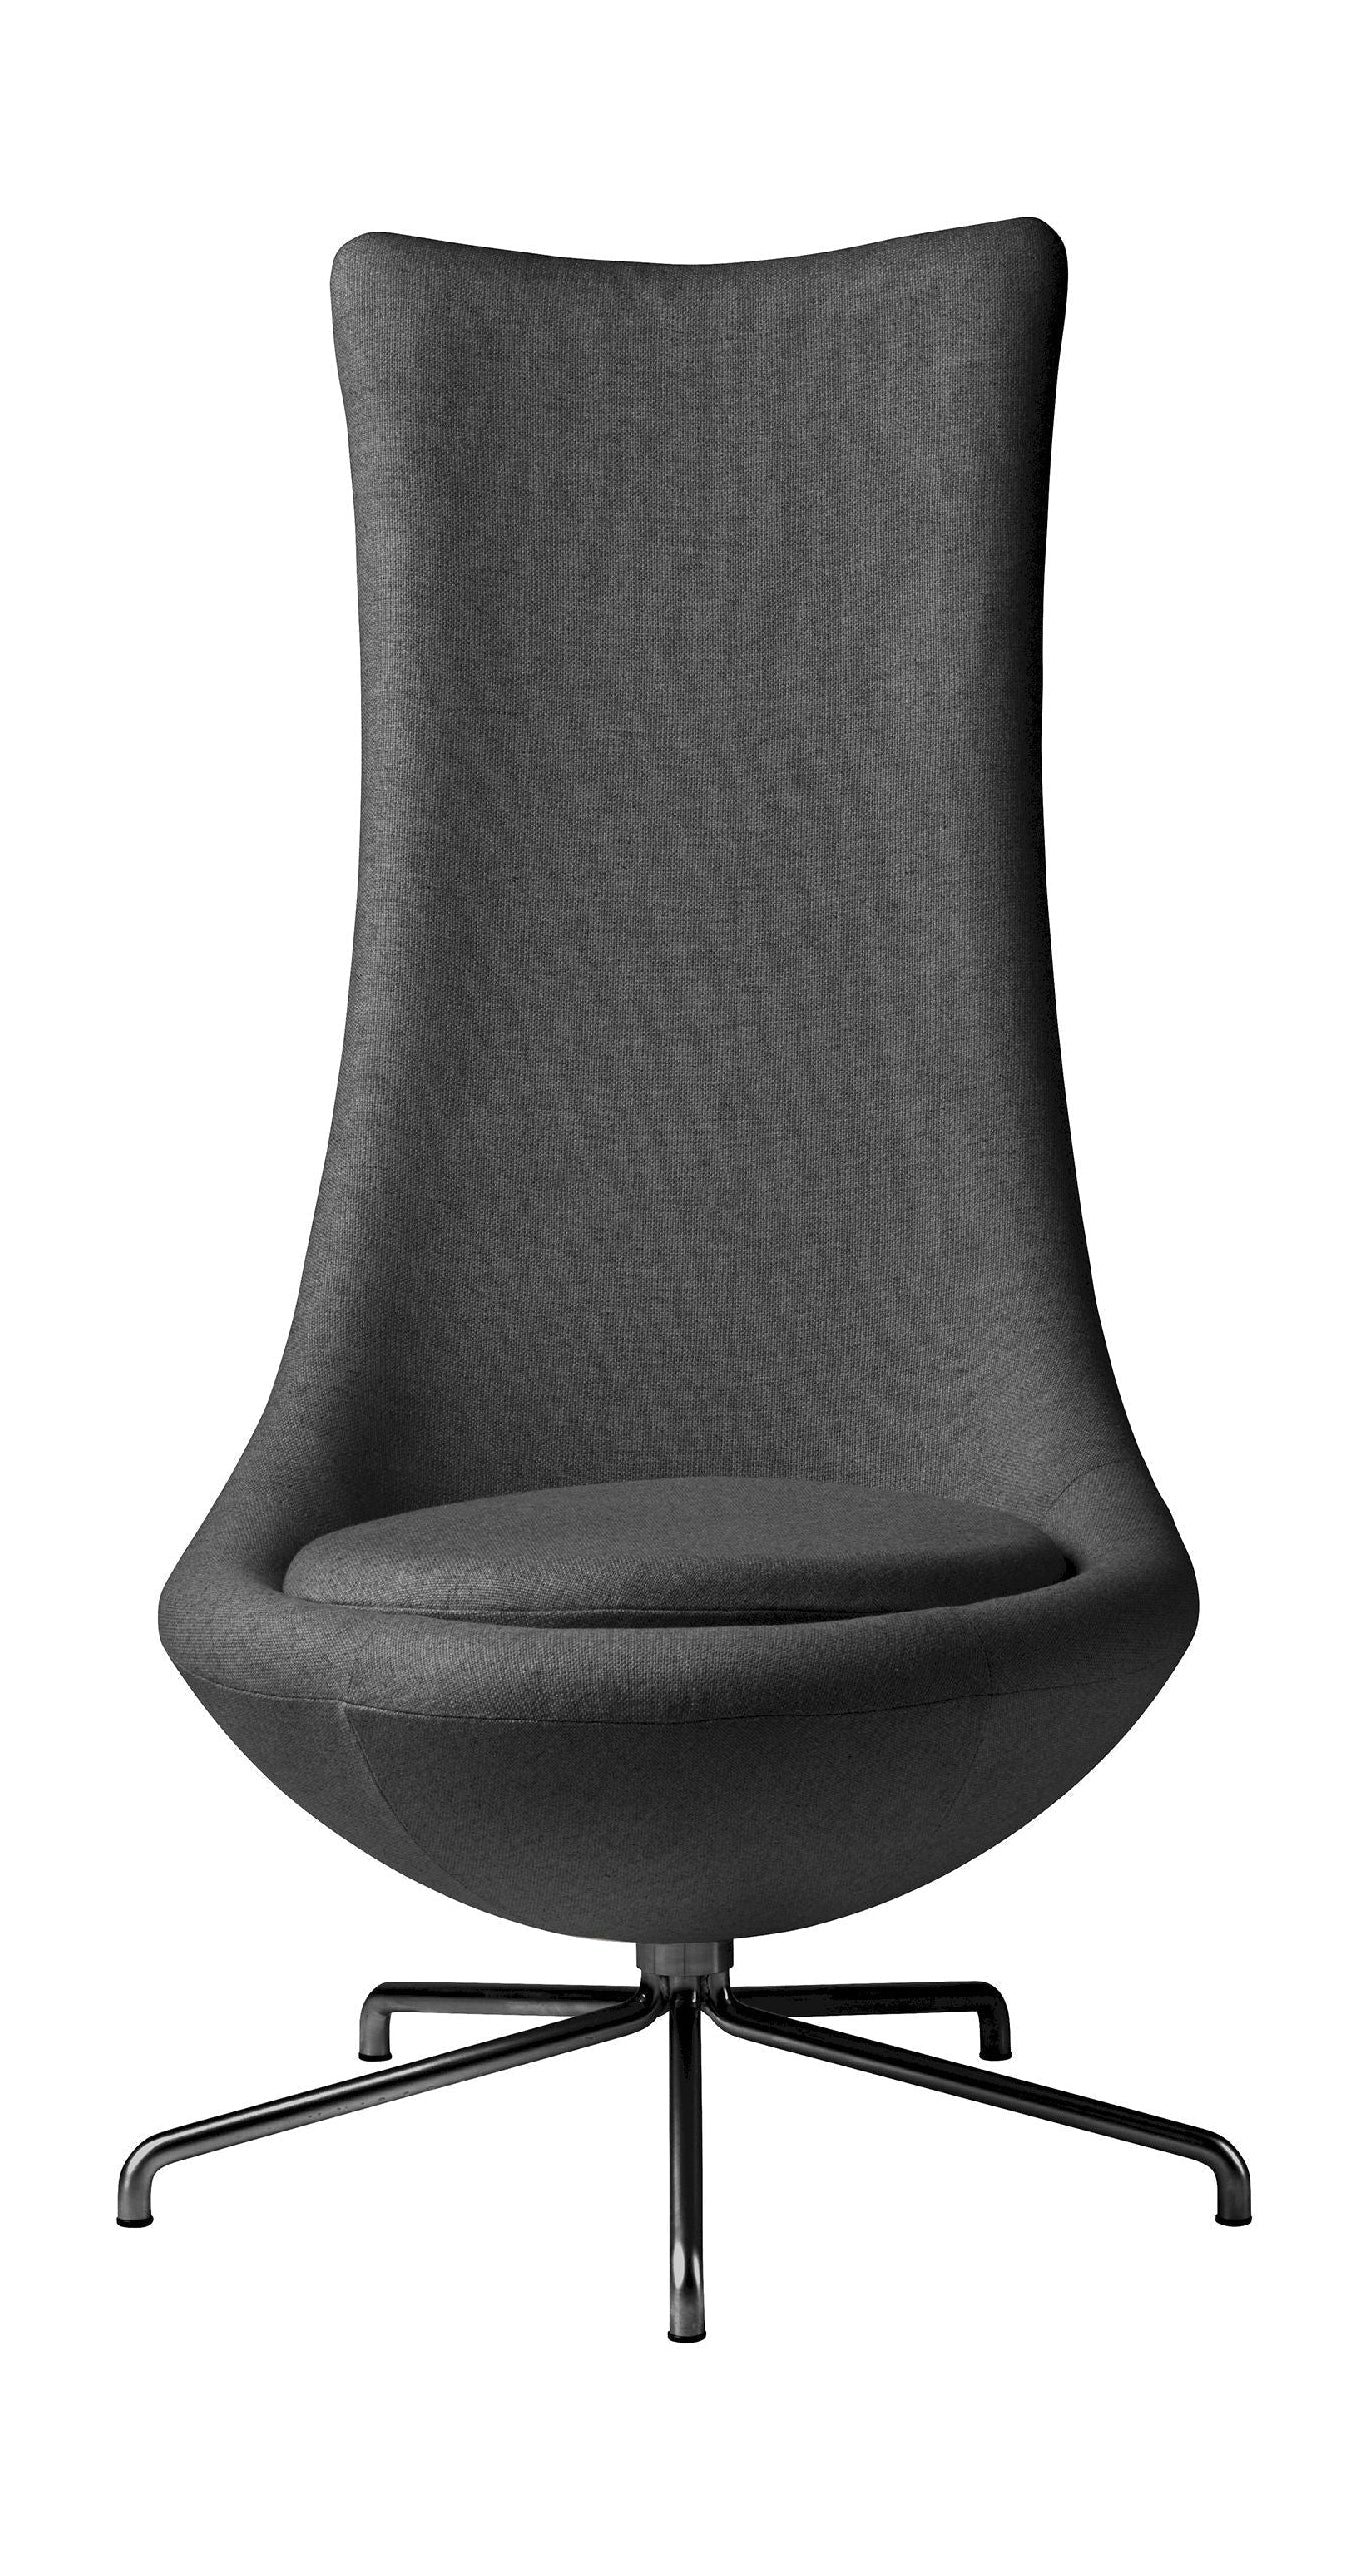 FDB Møbler L41 Bellamie Lounge sillón con bogie, gris oscuro/negro